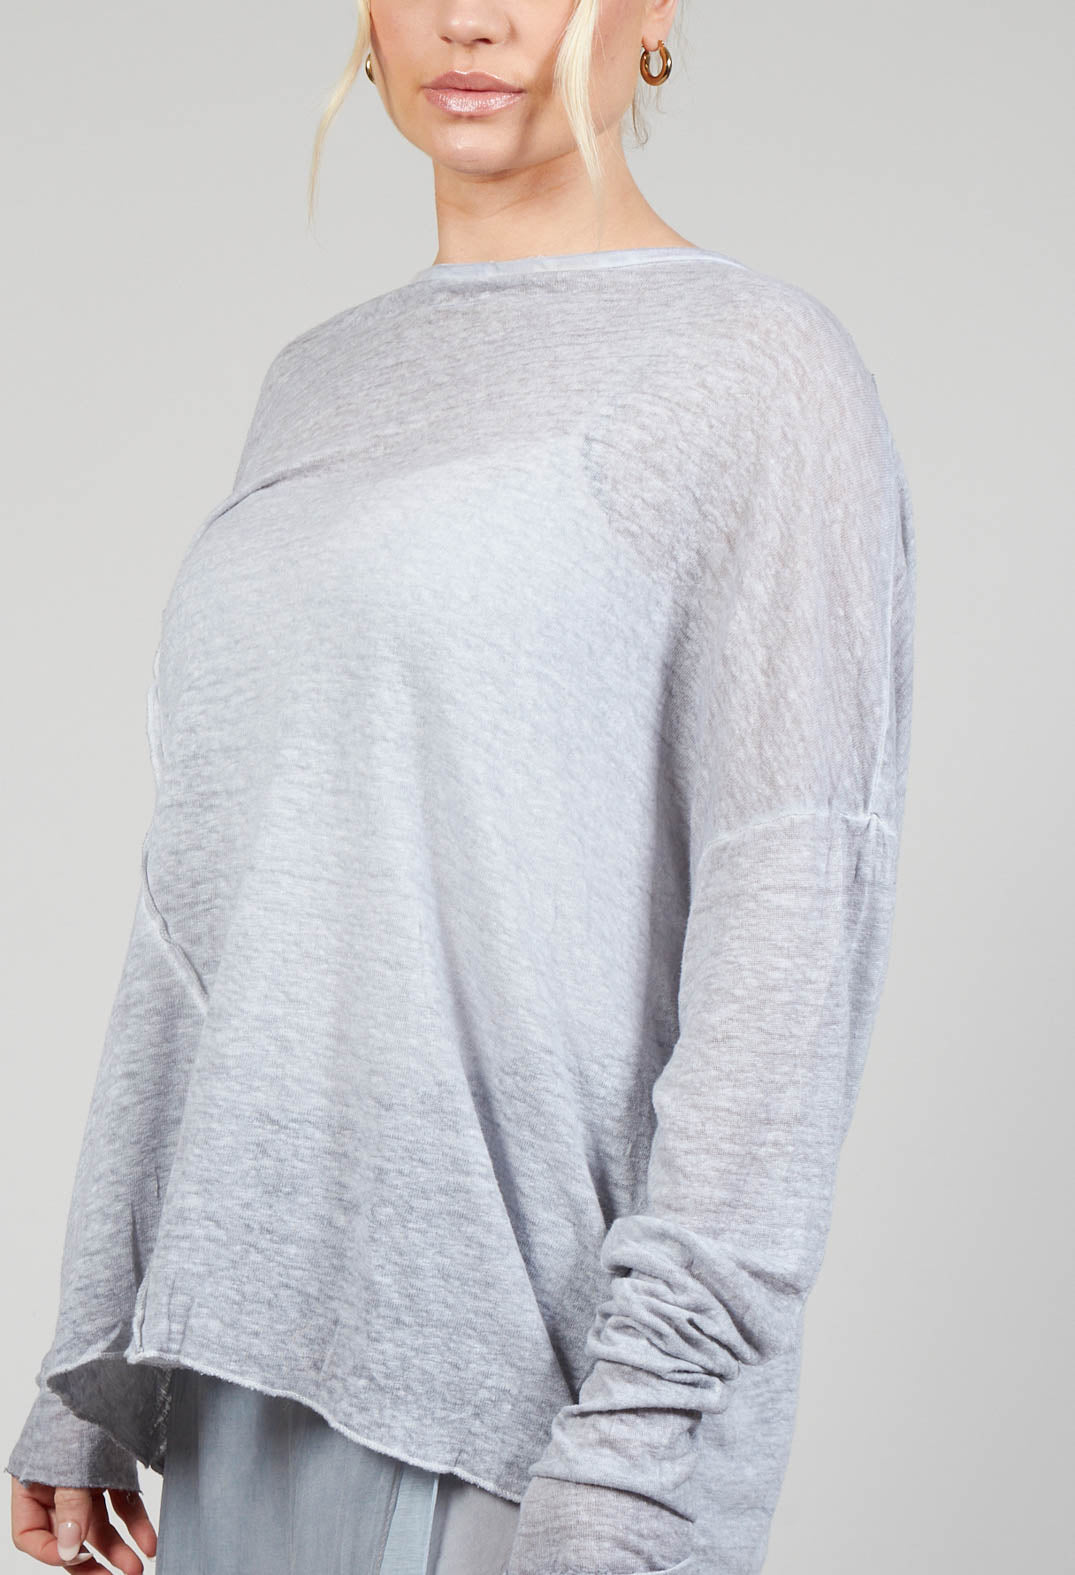 Linen Comfort Top in Original Grey